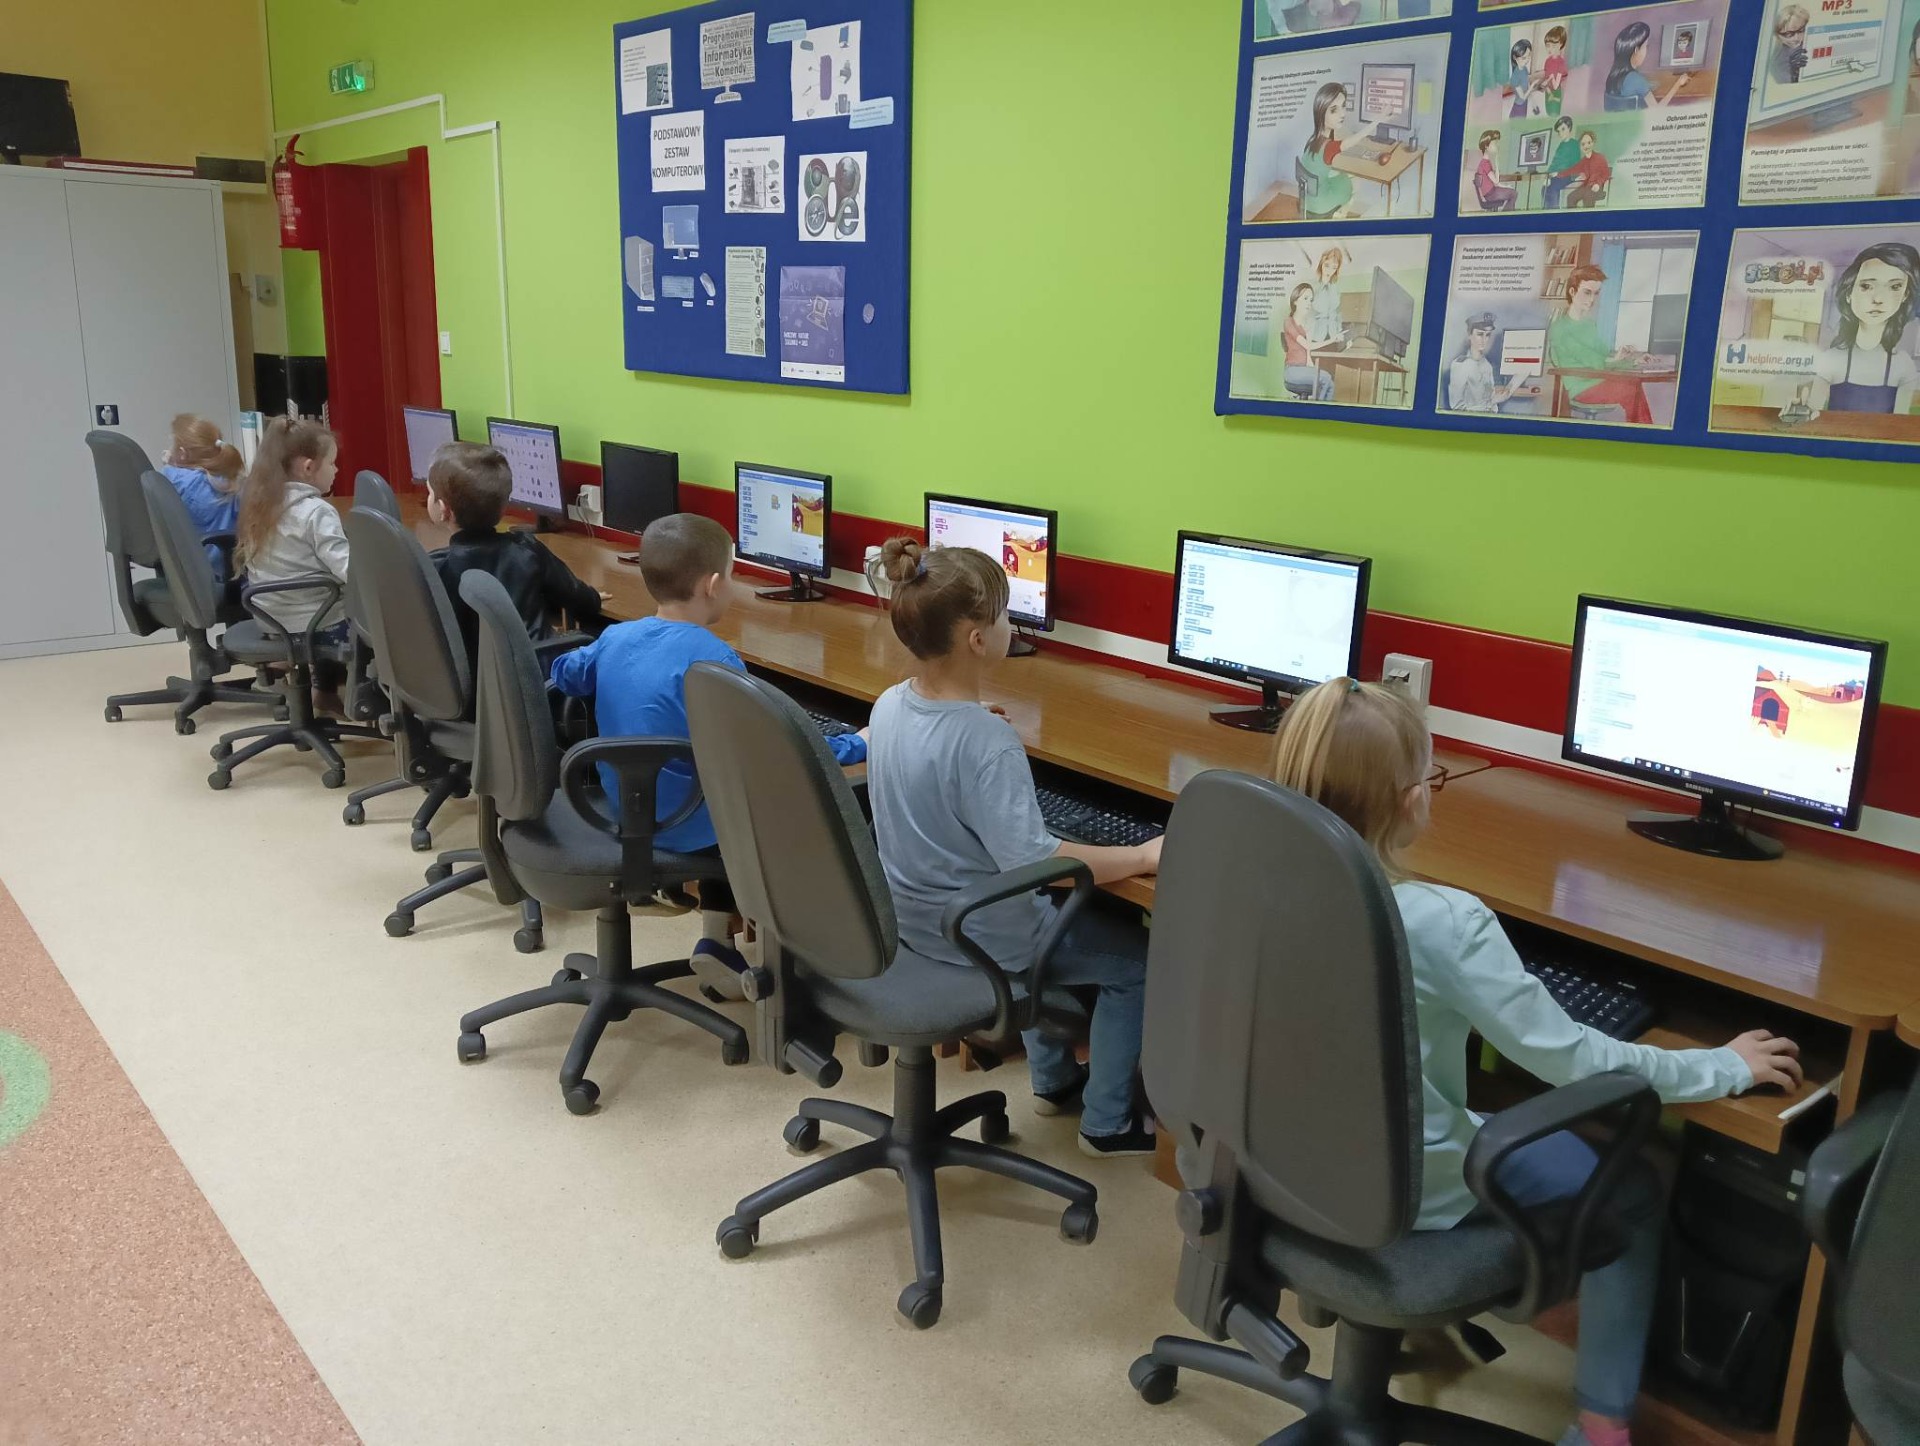 Uczniowie siedzą przy stanowiskach komputerowych w sali informatycznej